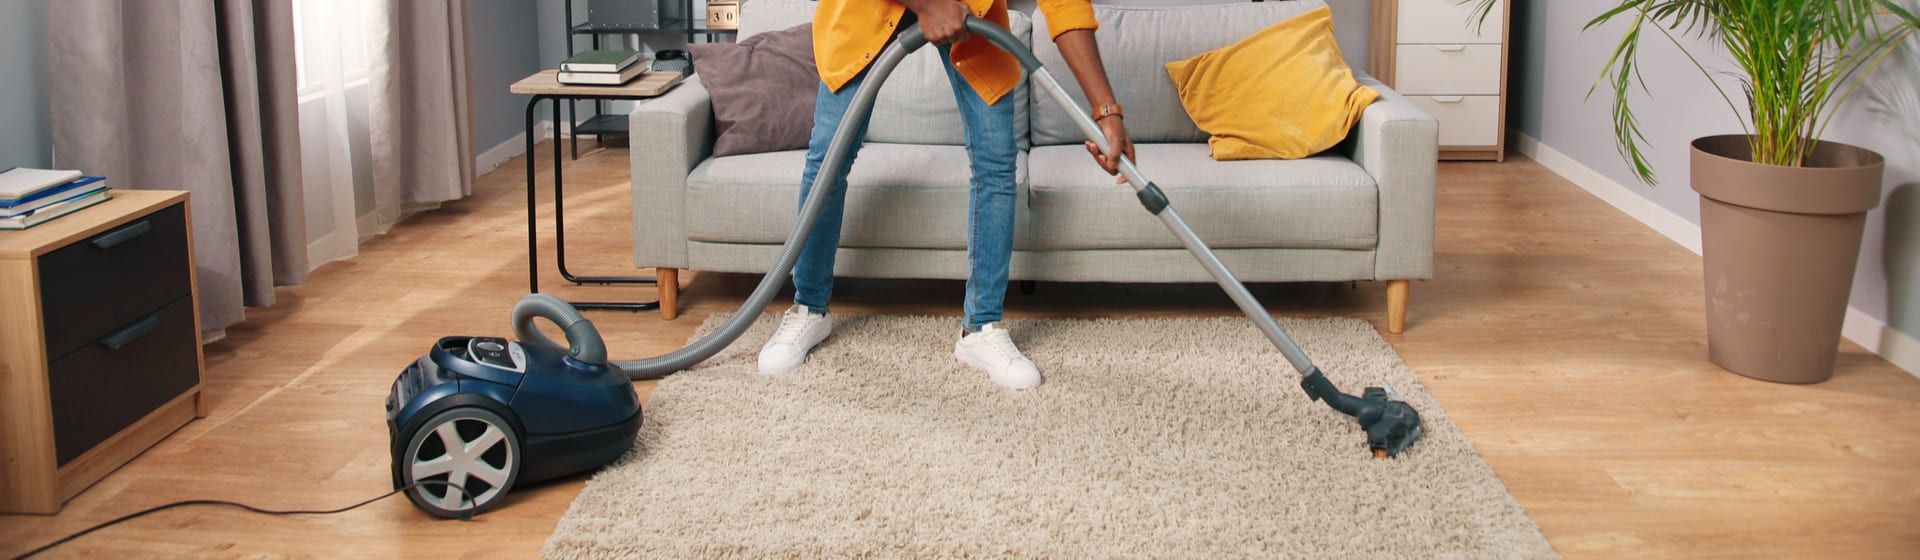 Homem negro usando um aspirador de pó para aspirar tapete numa sala de estar